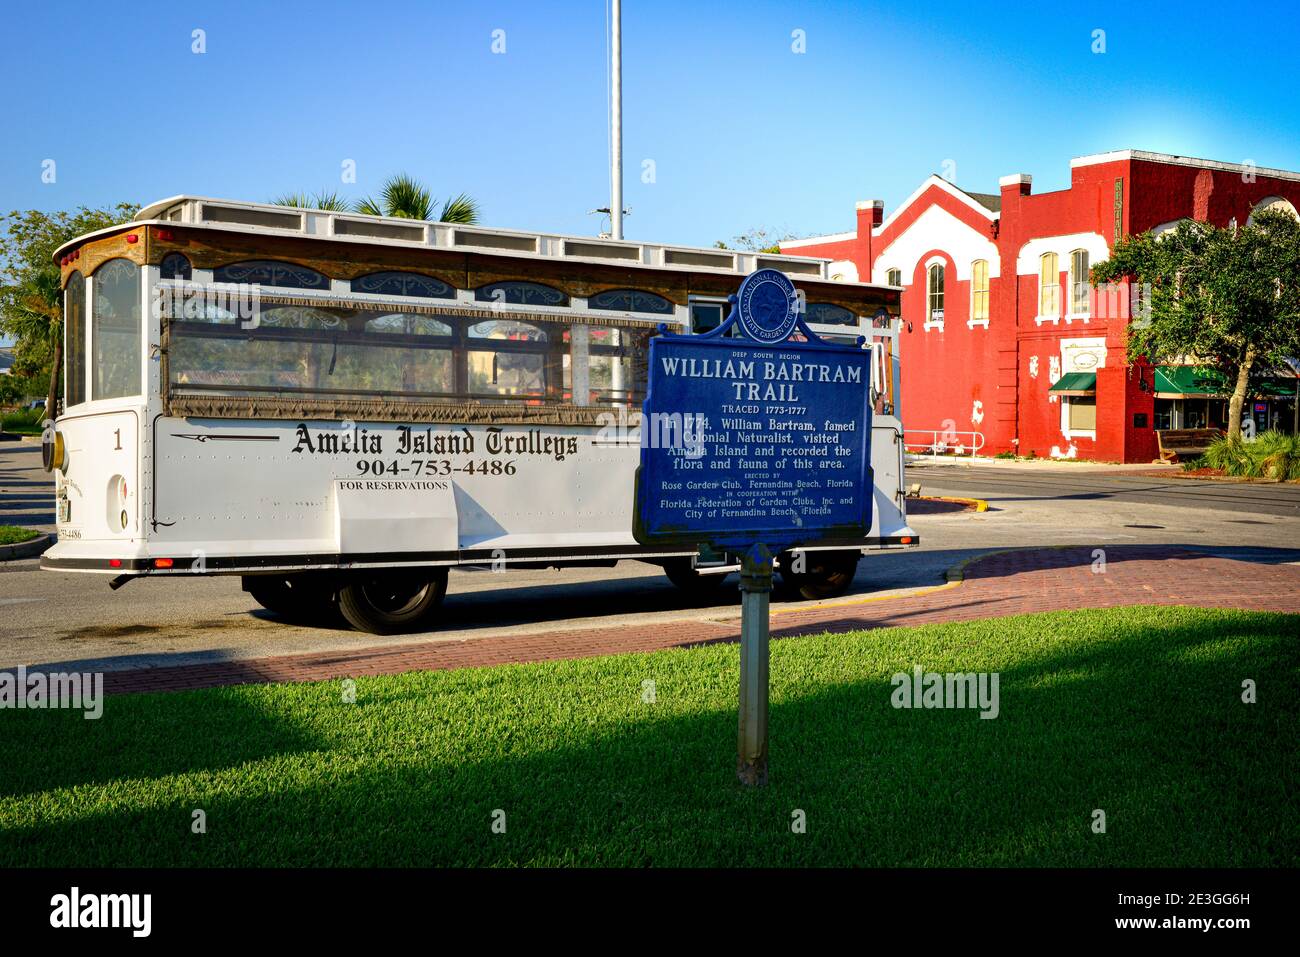 Un autobus Vintage tour dei Trolley dell'Isola di Amelia, nel quartiere storico di Fernandina Beach, con segno storico per il naturalista, William Bartram, FL Foto Stock